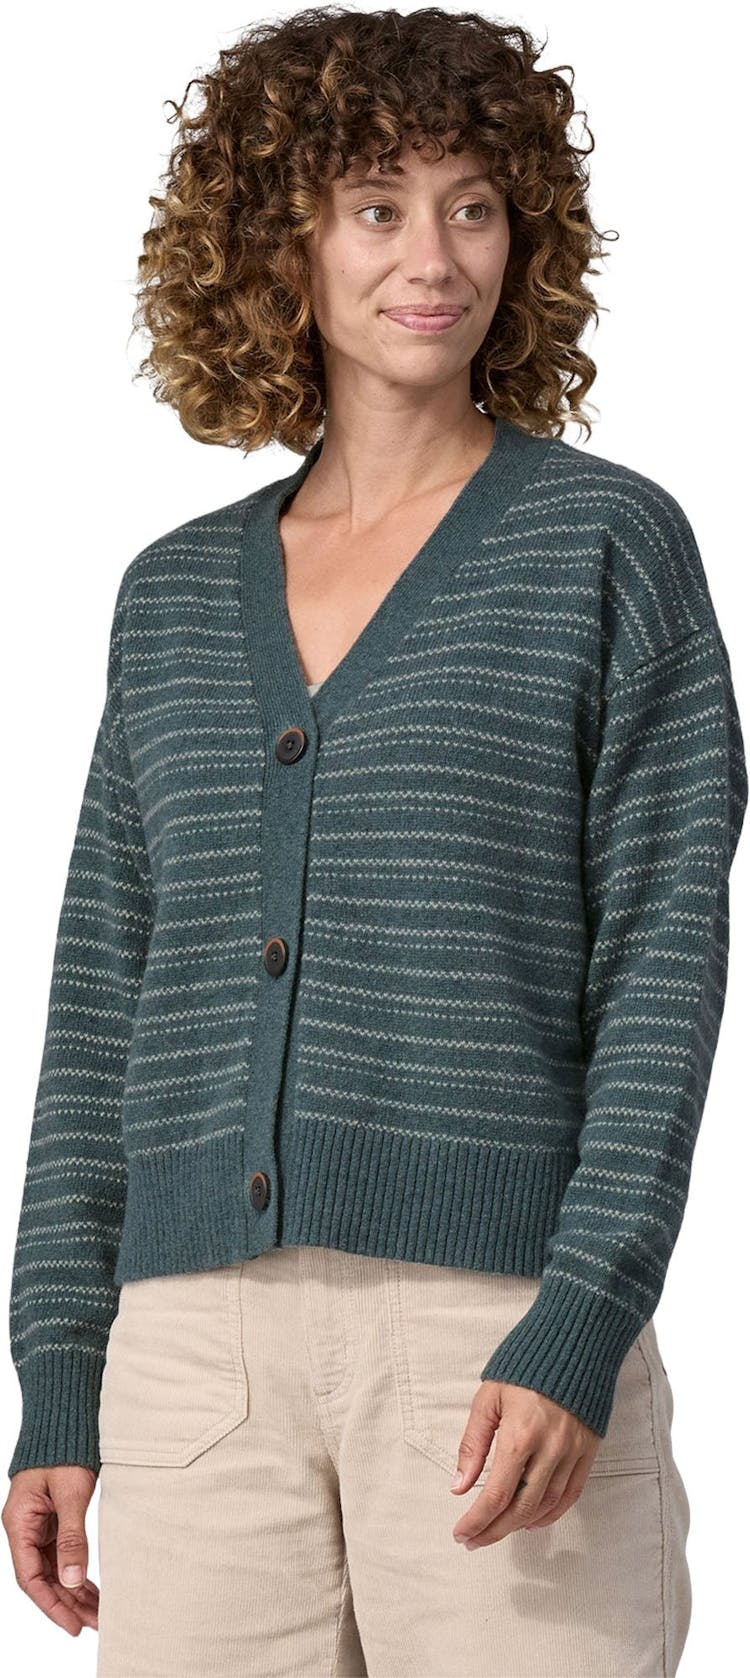 Numéro de l'image de la galerie de produits 3 pour le produit Cardigan en laine recyclé - Femme